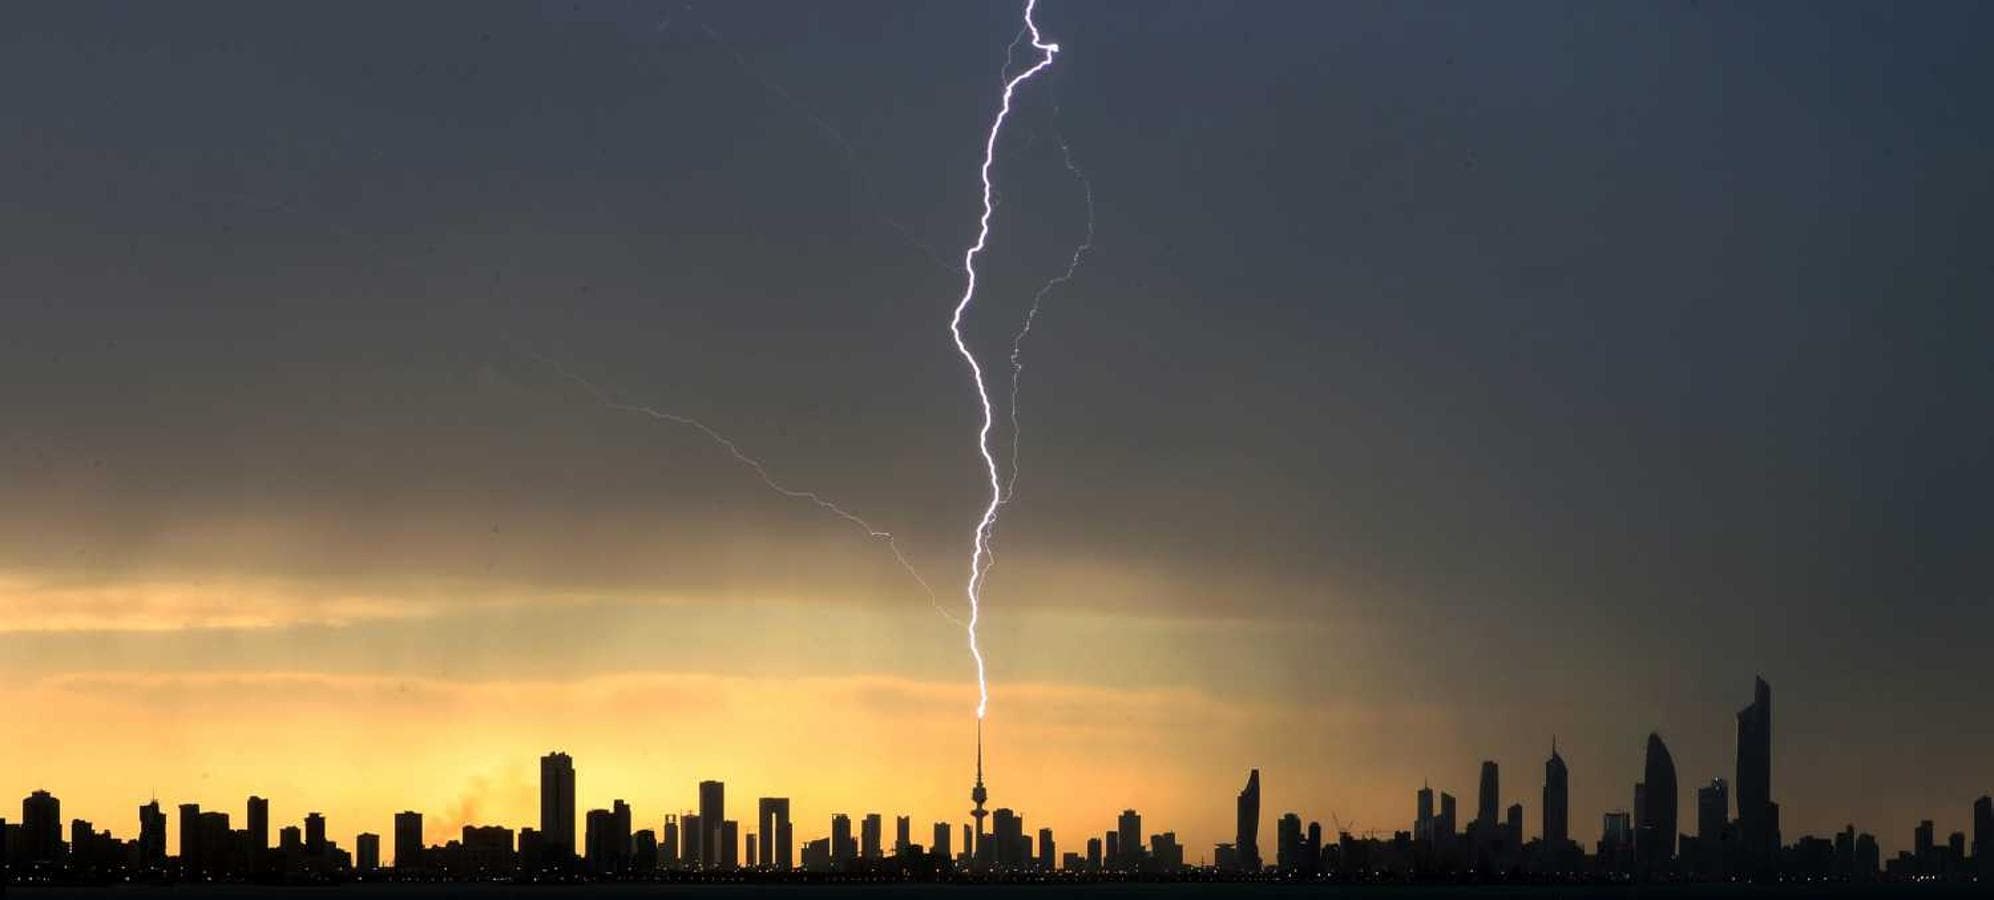 Rayo impactando en la Torre de la Liberación (Kuwait), durante una tormenta 